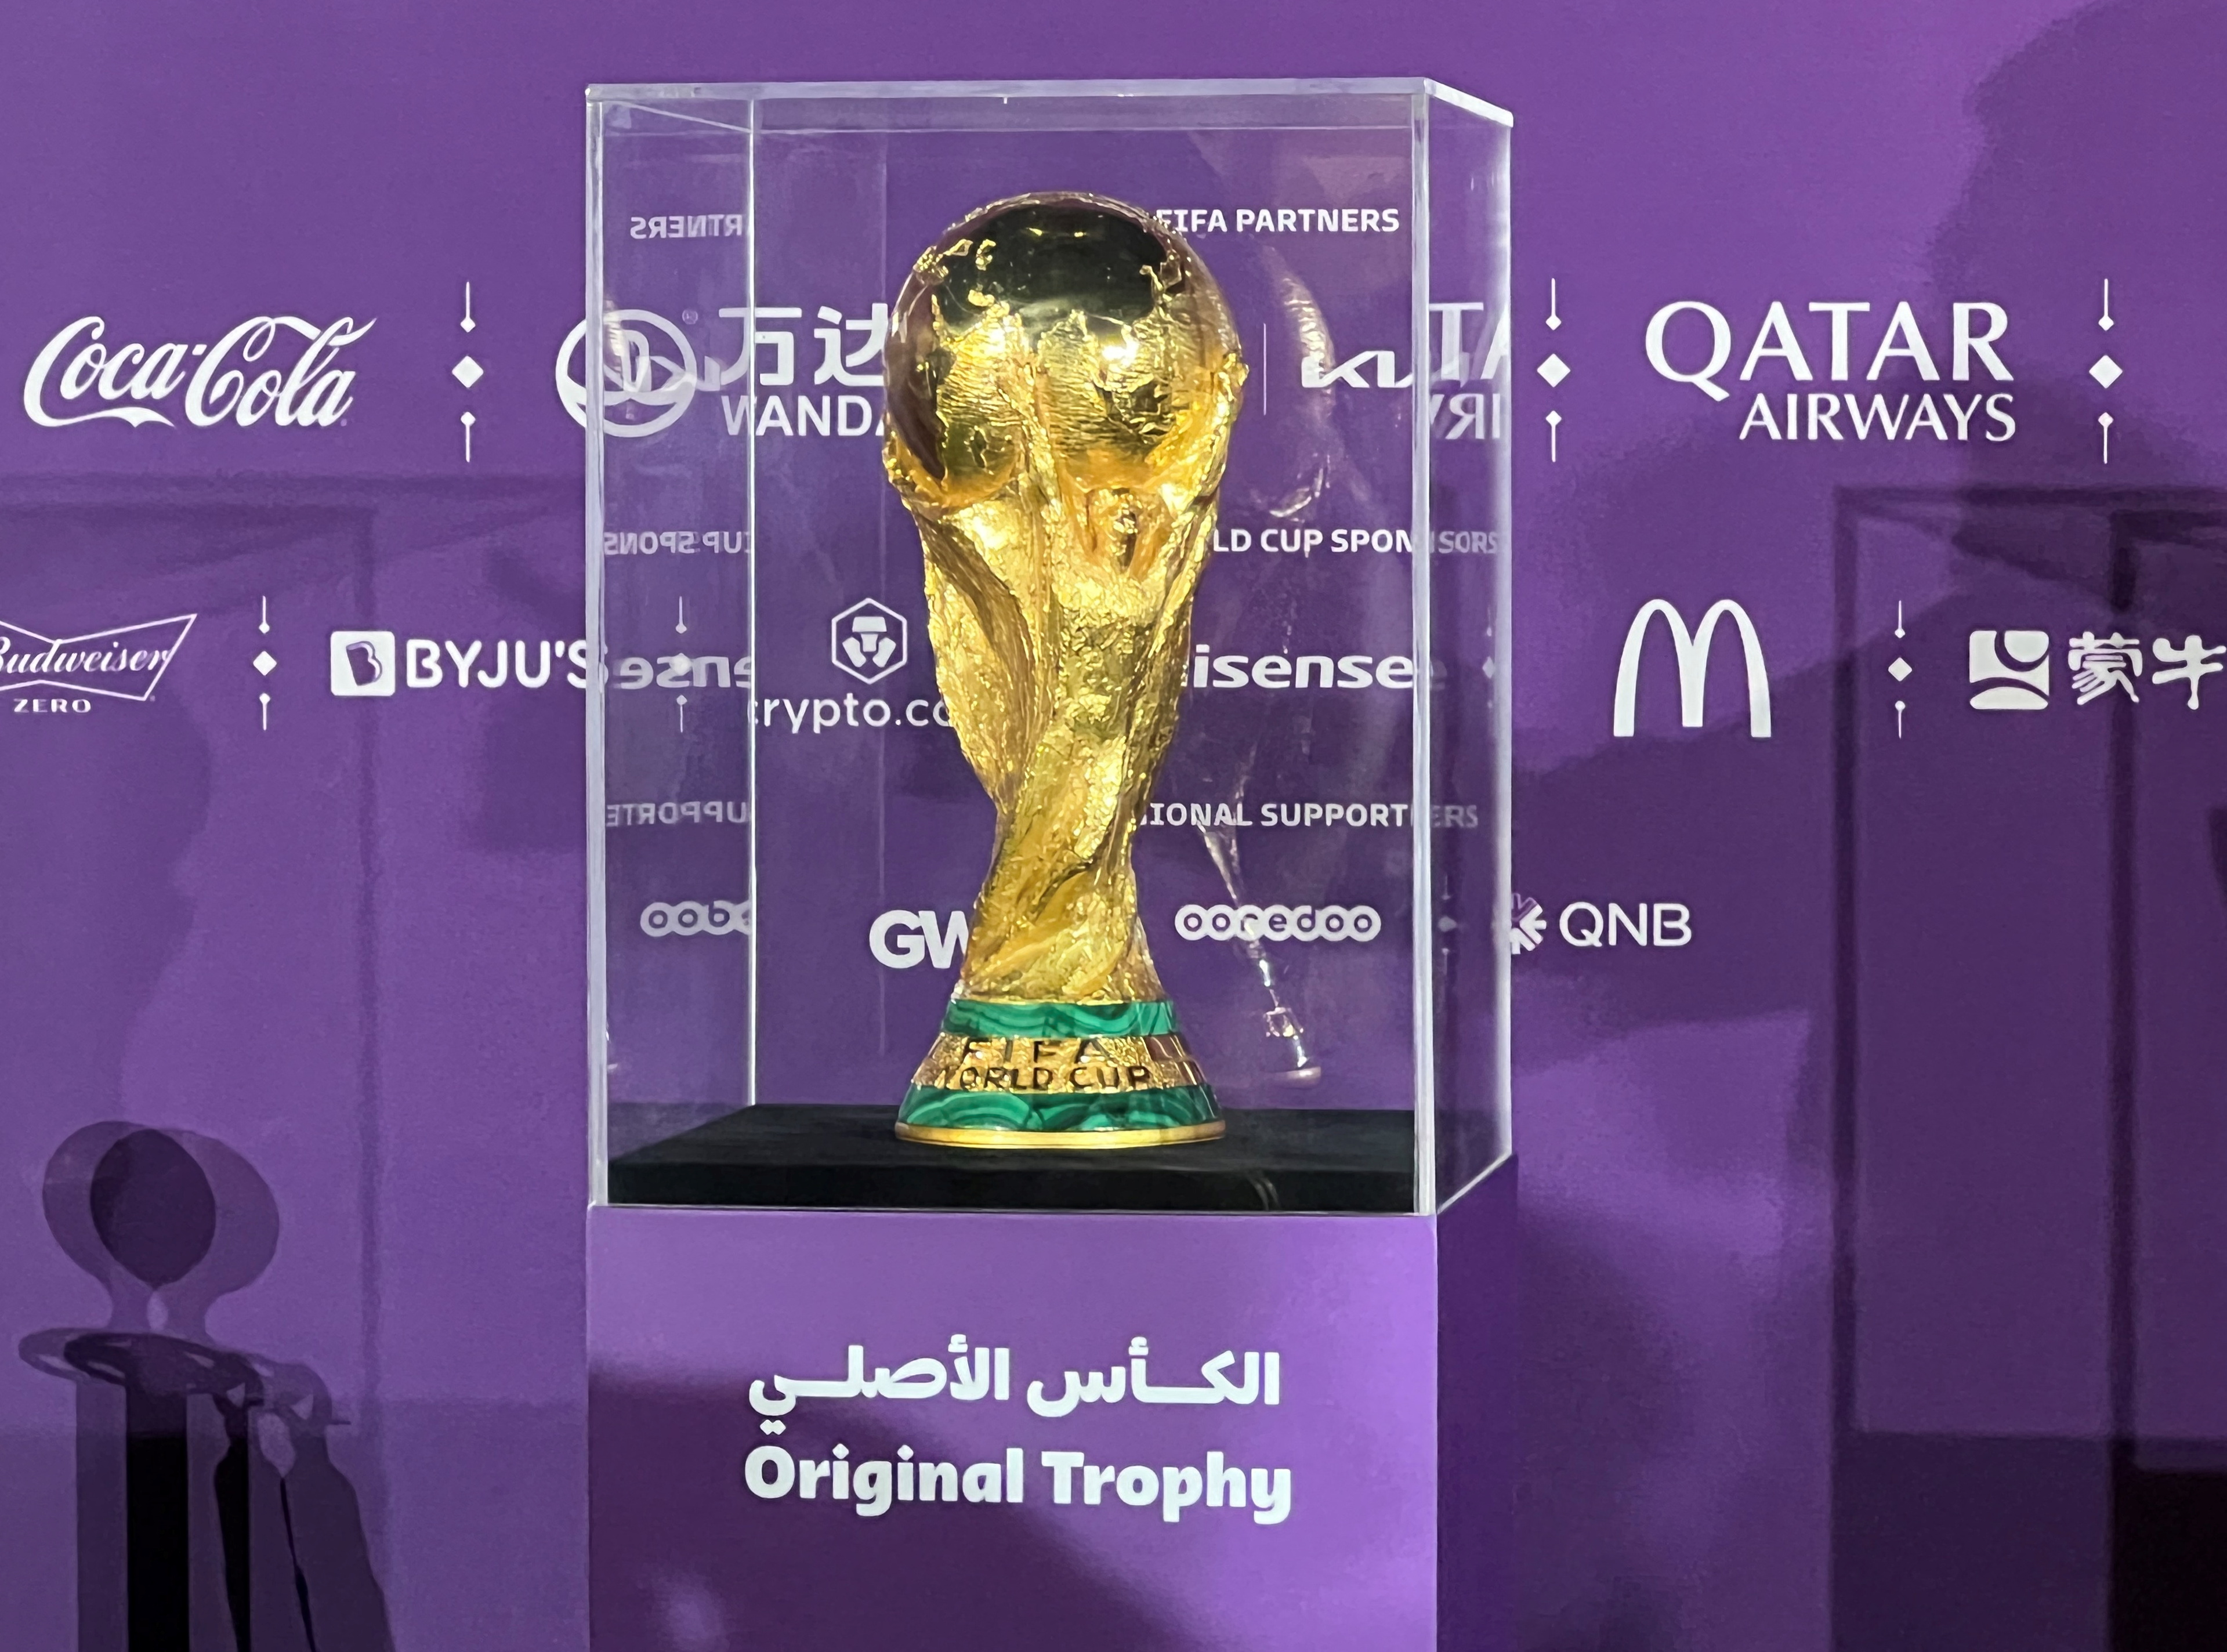 FIFA anunció que se puso en marcha un nuevo período de venta de entradas para el Mundial de Qatar 2022